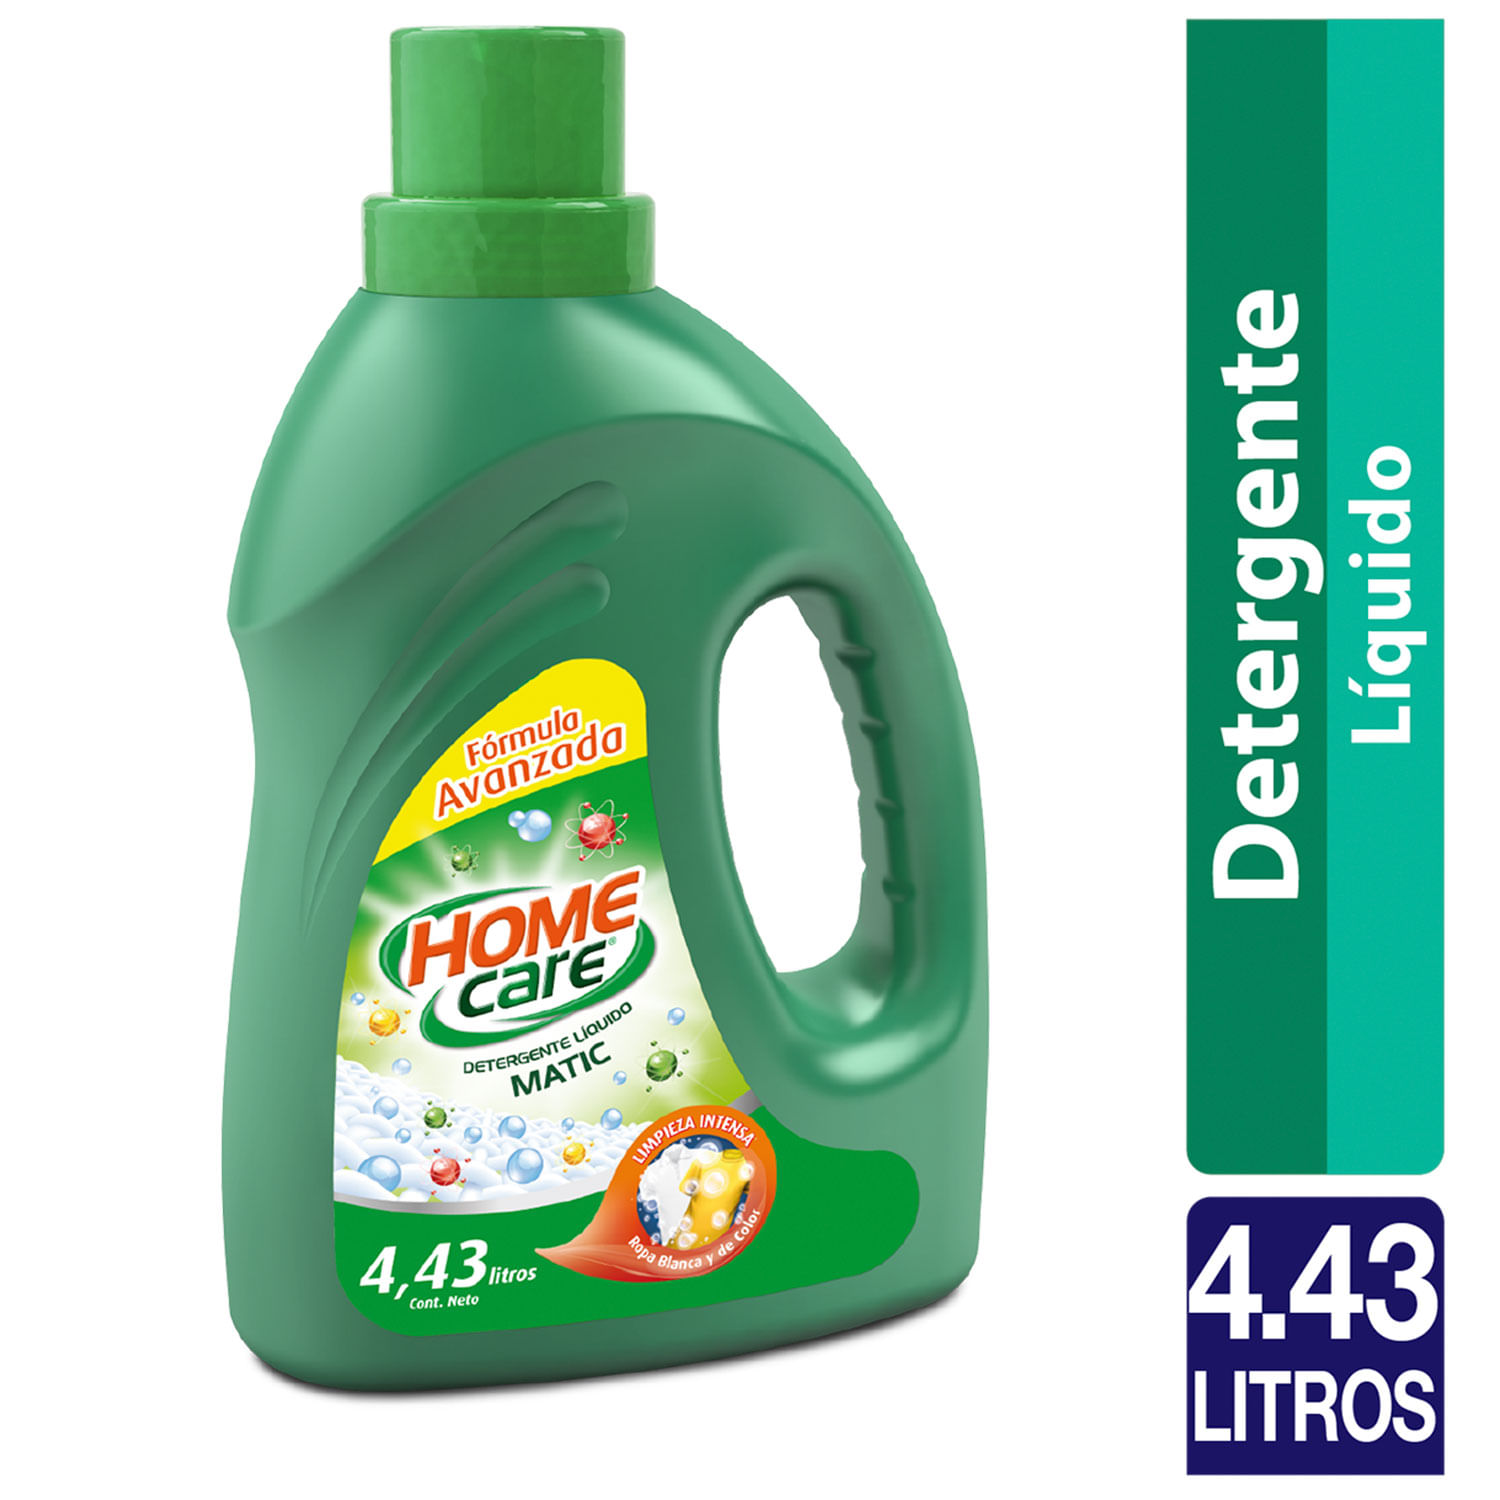 Detergente líquido Ace Limpieza Completa 1 Para Todo Concentrado 5 l